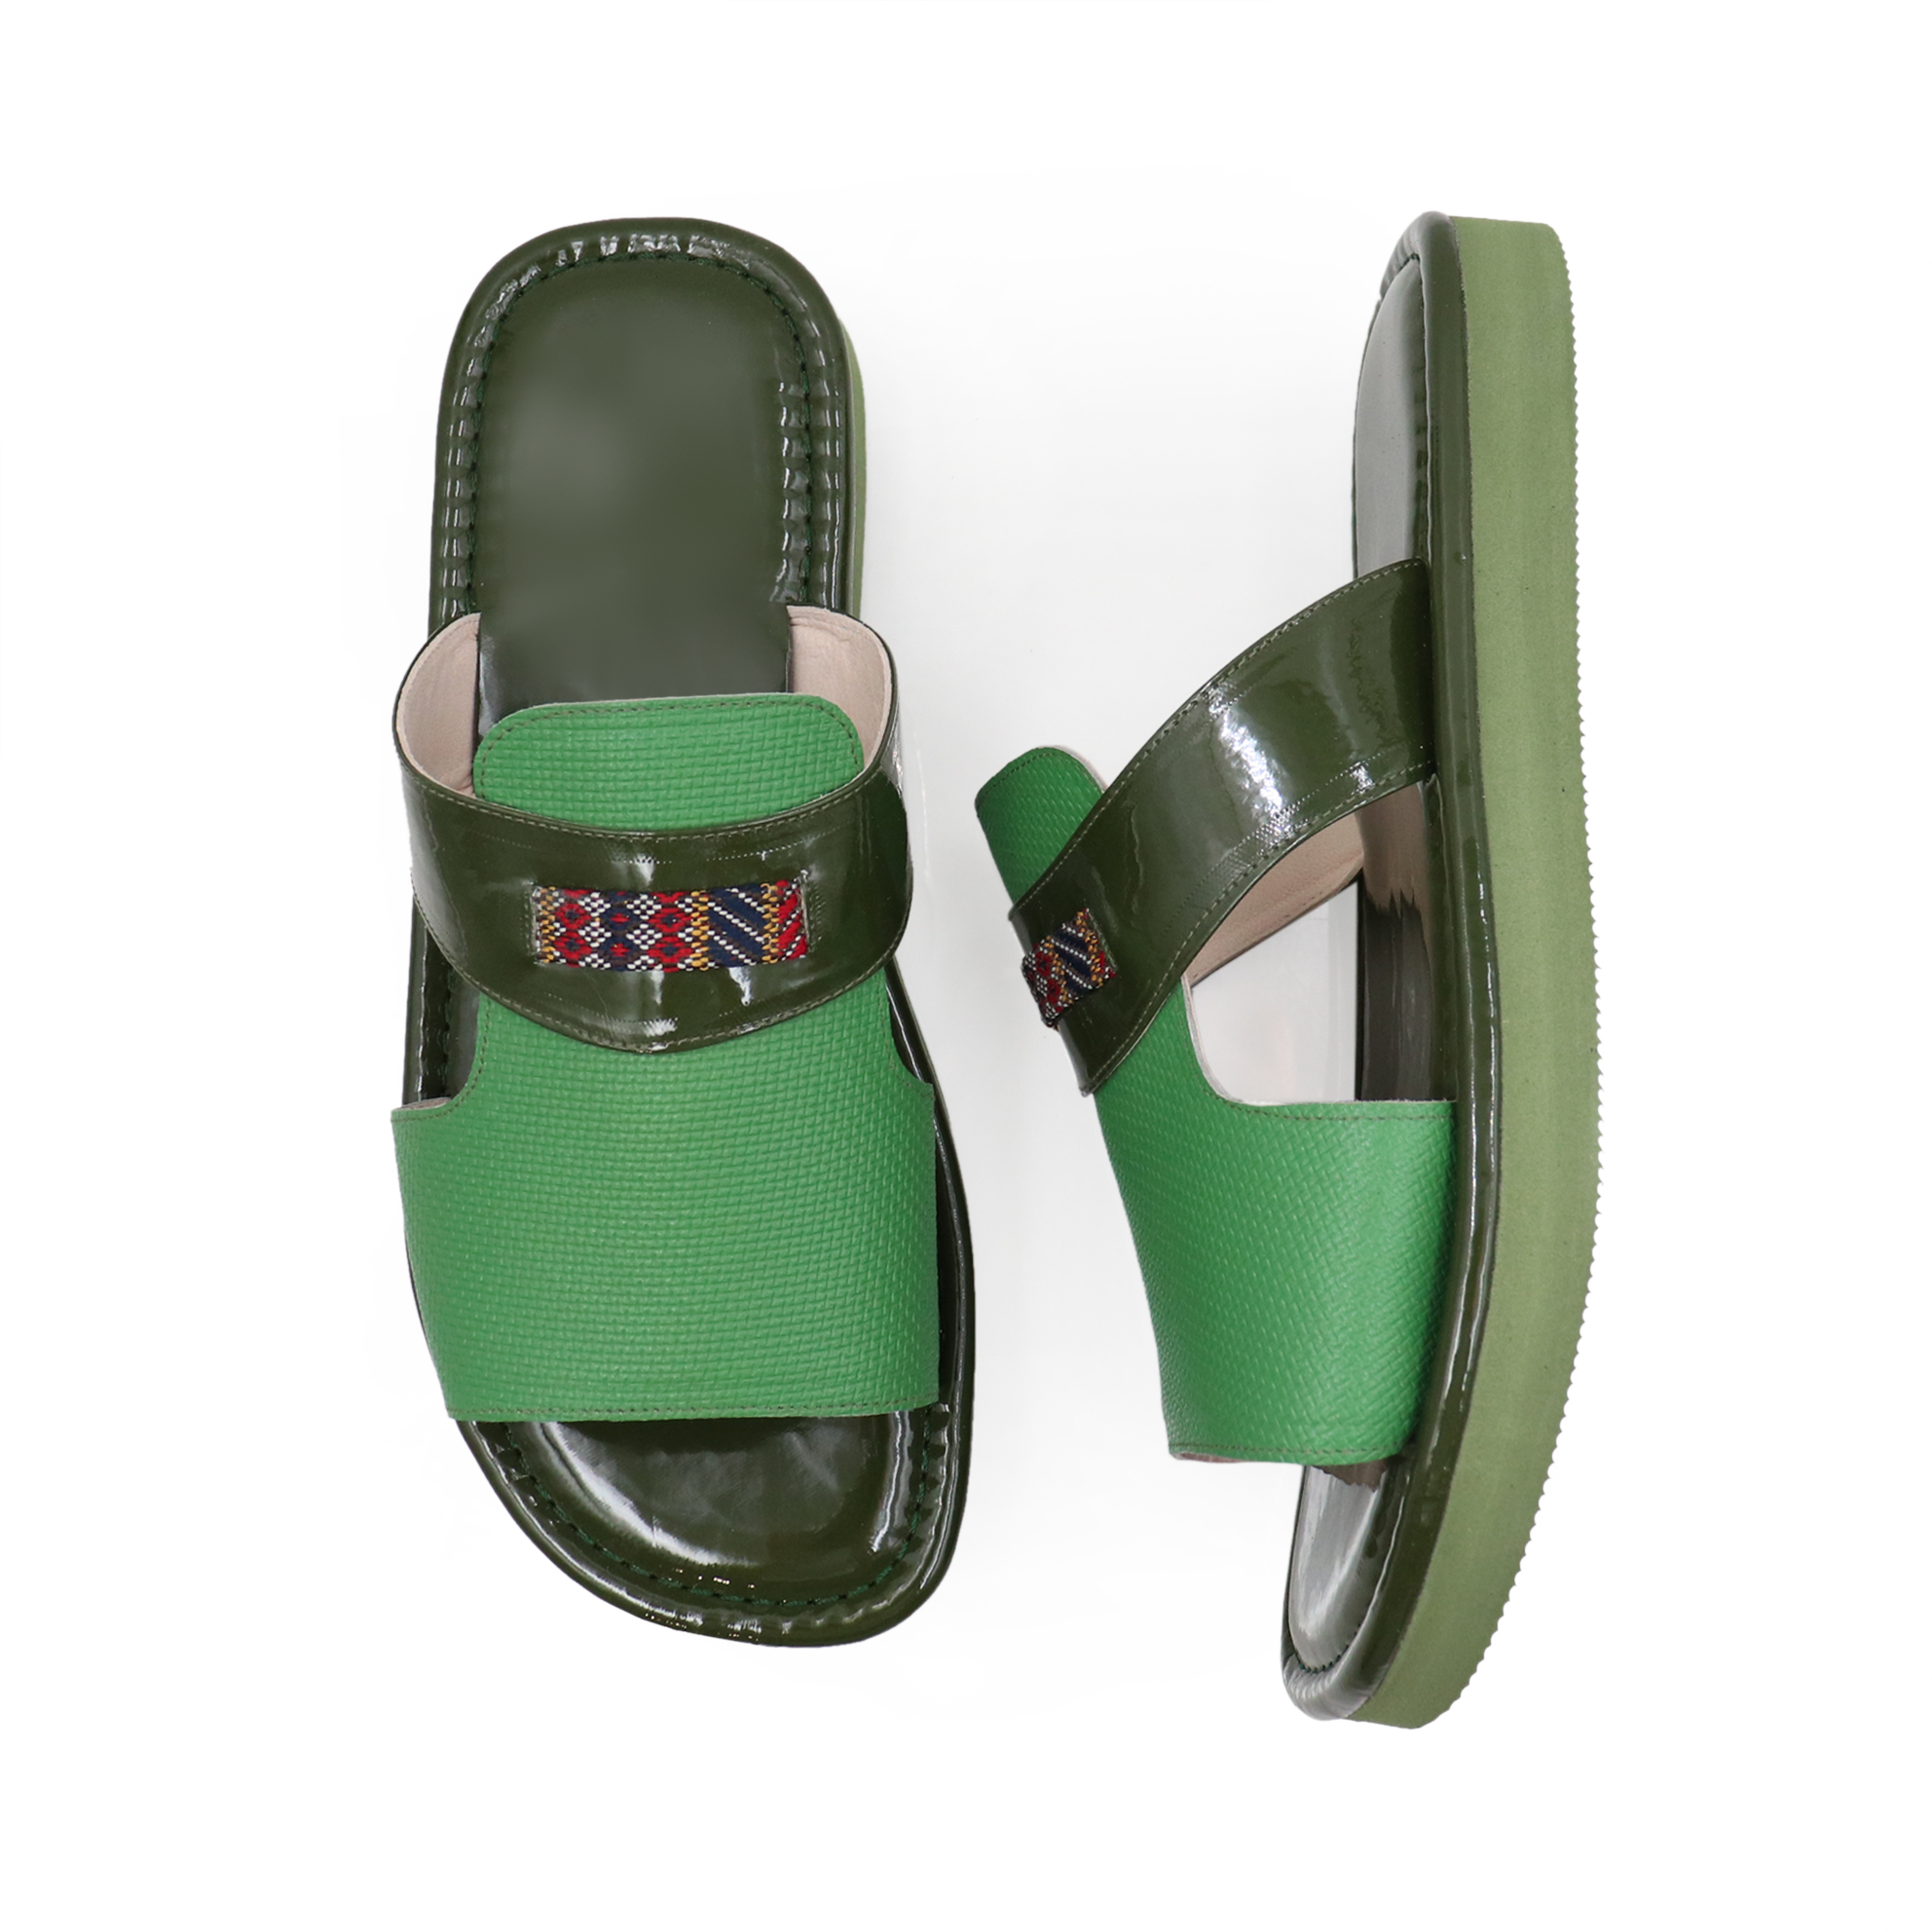 حذاء شرقي أخضر